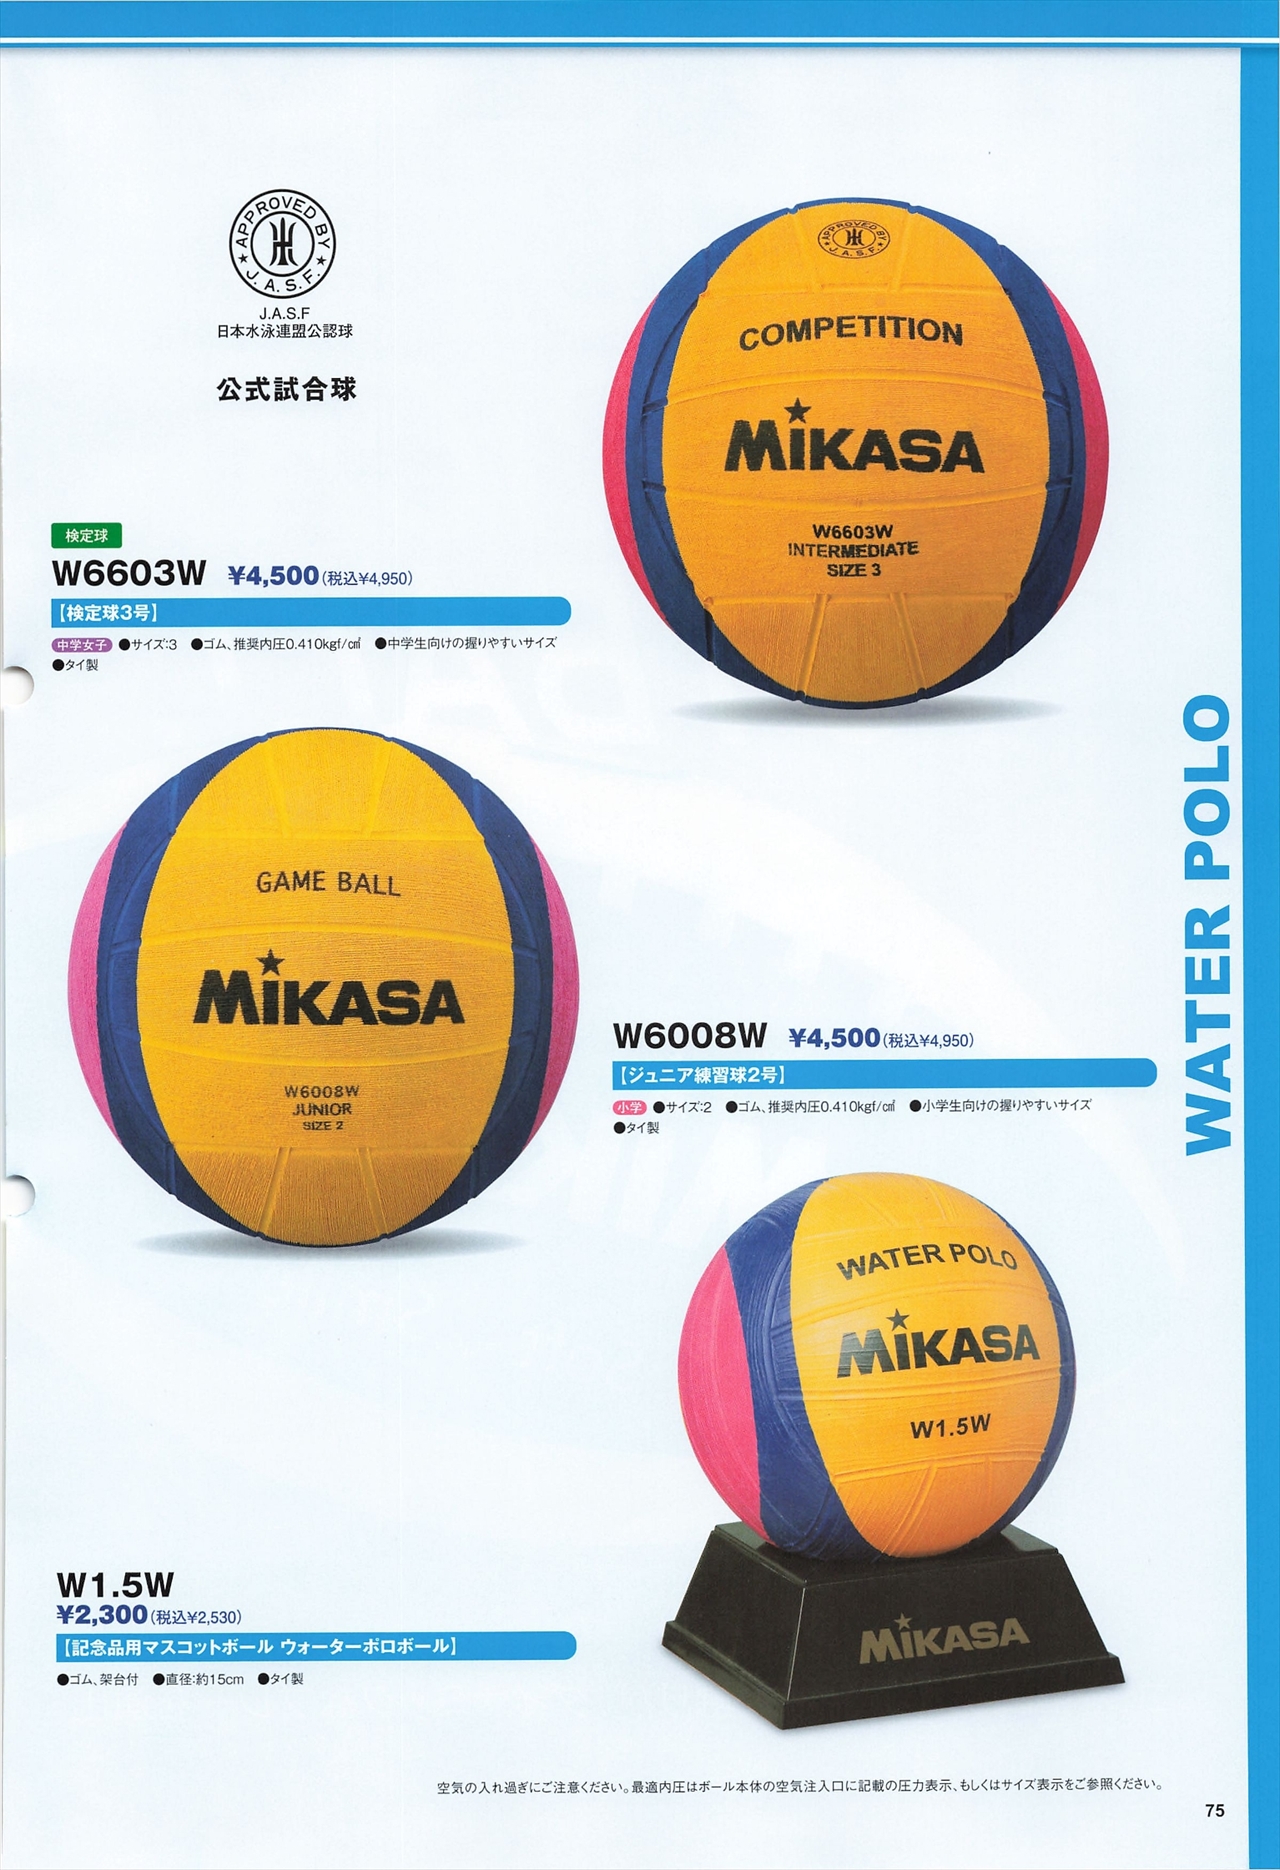 ファクトリーアウトレット 水球 ミカサ MIKASA 記念品用マスコットボール ウォーターポロ ブルー イエロー ピンク W1.5W  umon.co.jp